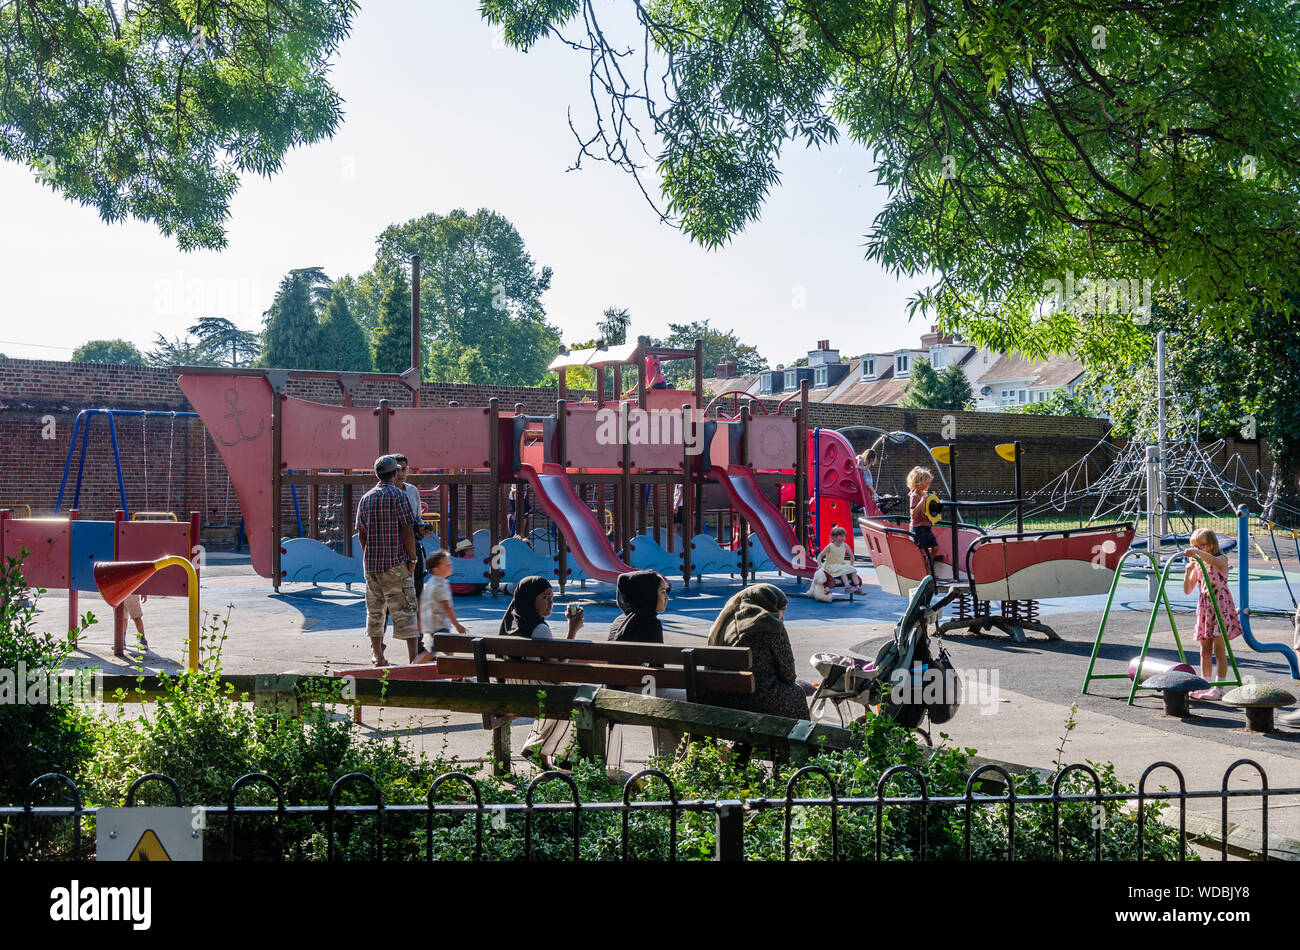 Children play in a children's playground in Higginson Park in Marlow. Stock Photo